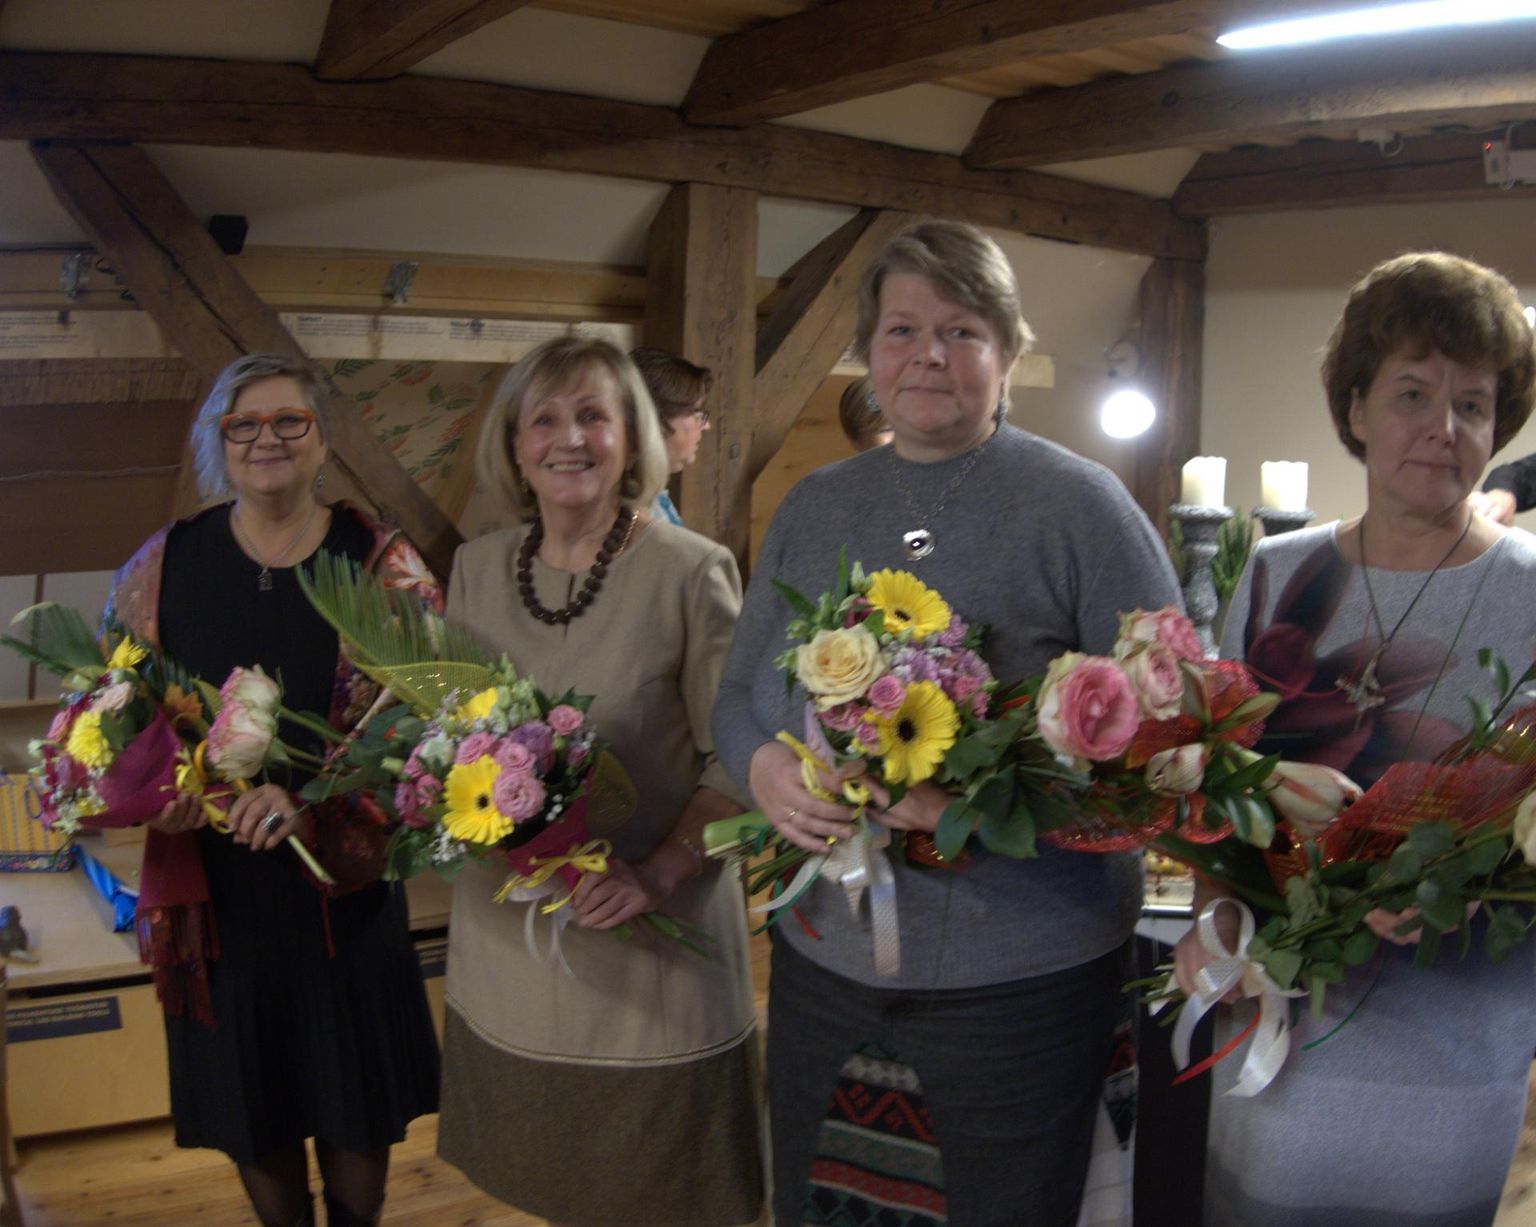 Aasta tegija tunnustused võtsid vastu Leonora Lees (vasakult), Ene Lellep, Margit Õkva ja Terje Paes.
Mati Määrits